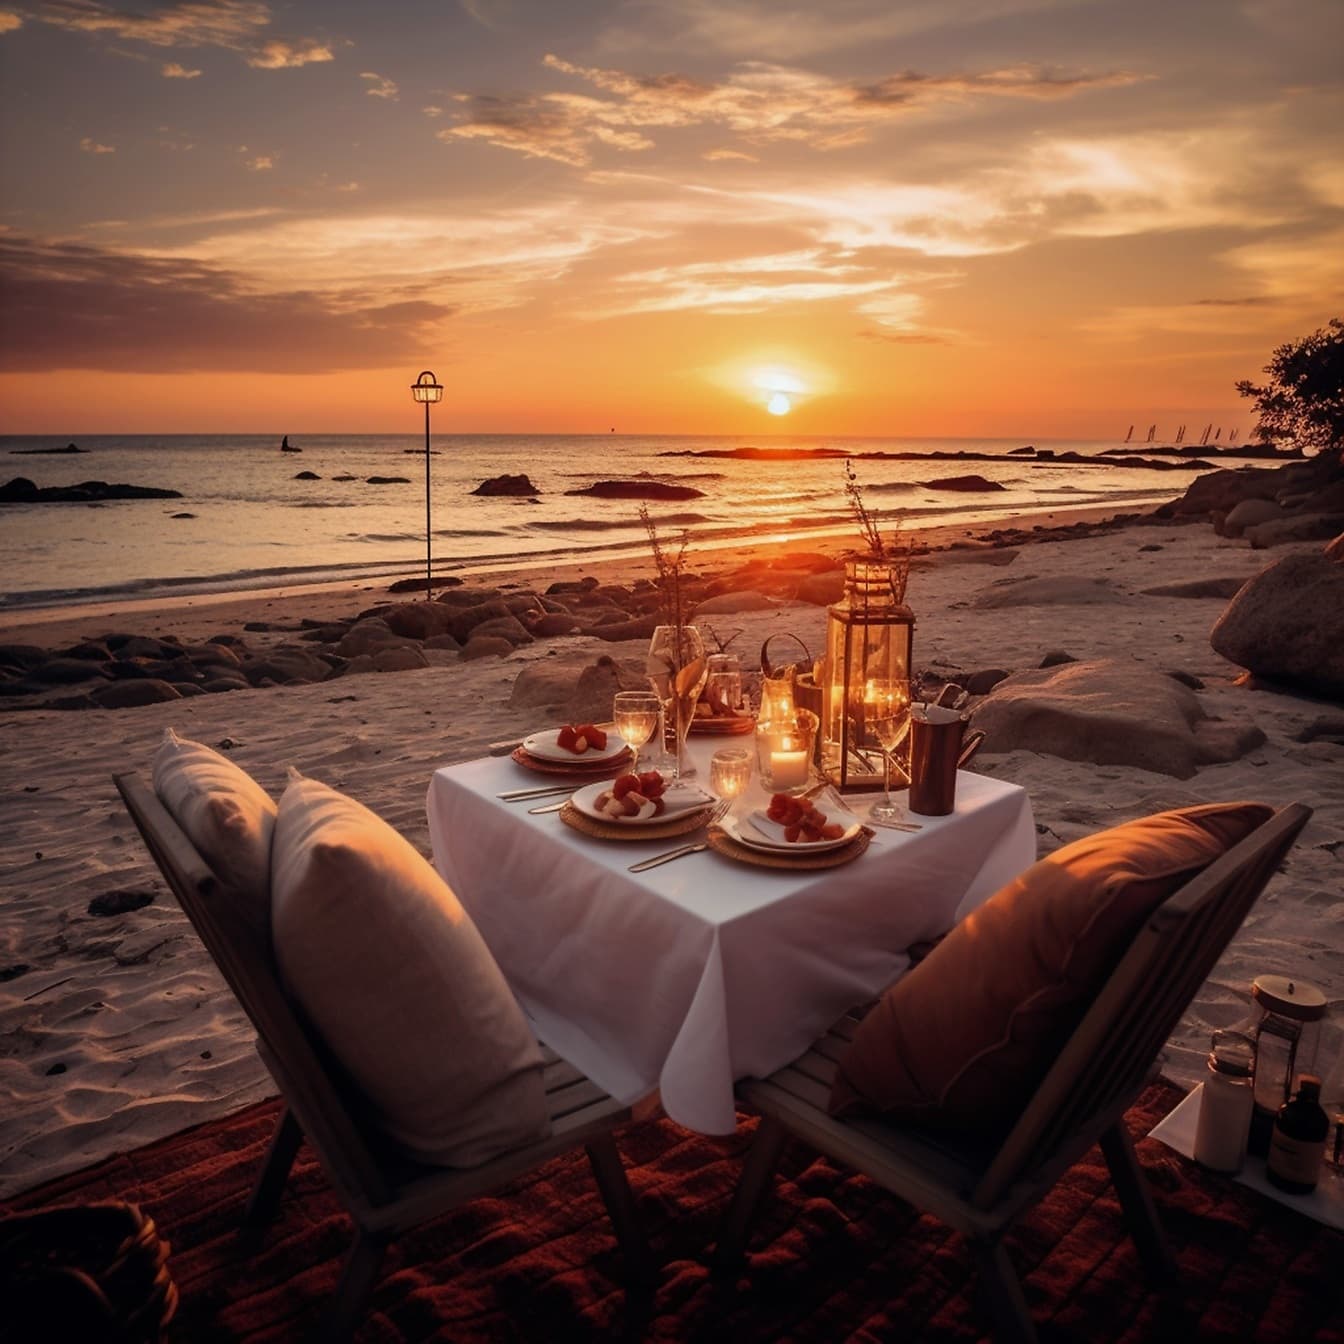 Romantisk spisebord ved stranden i solnedgang